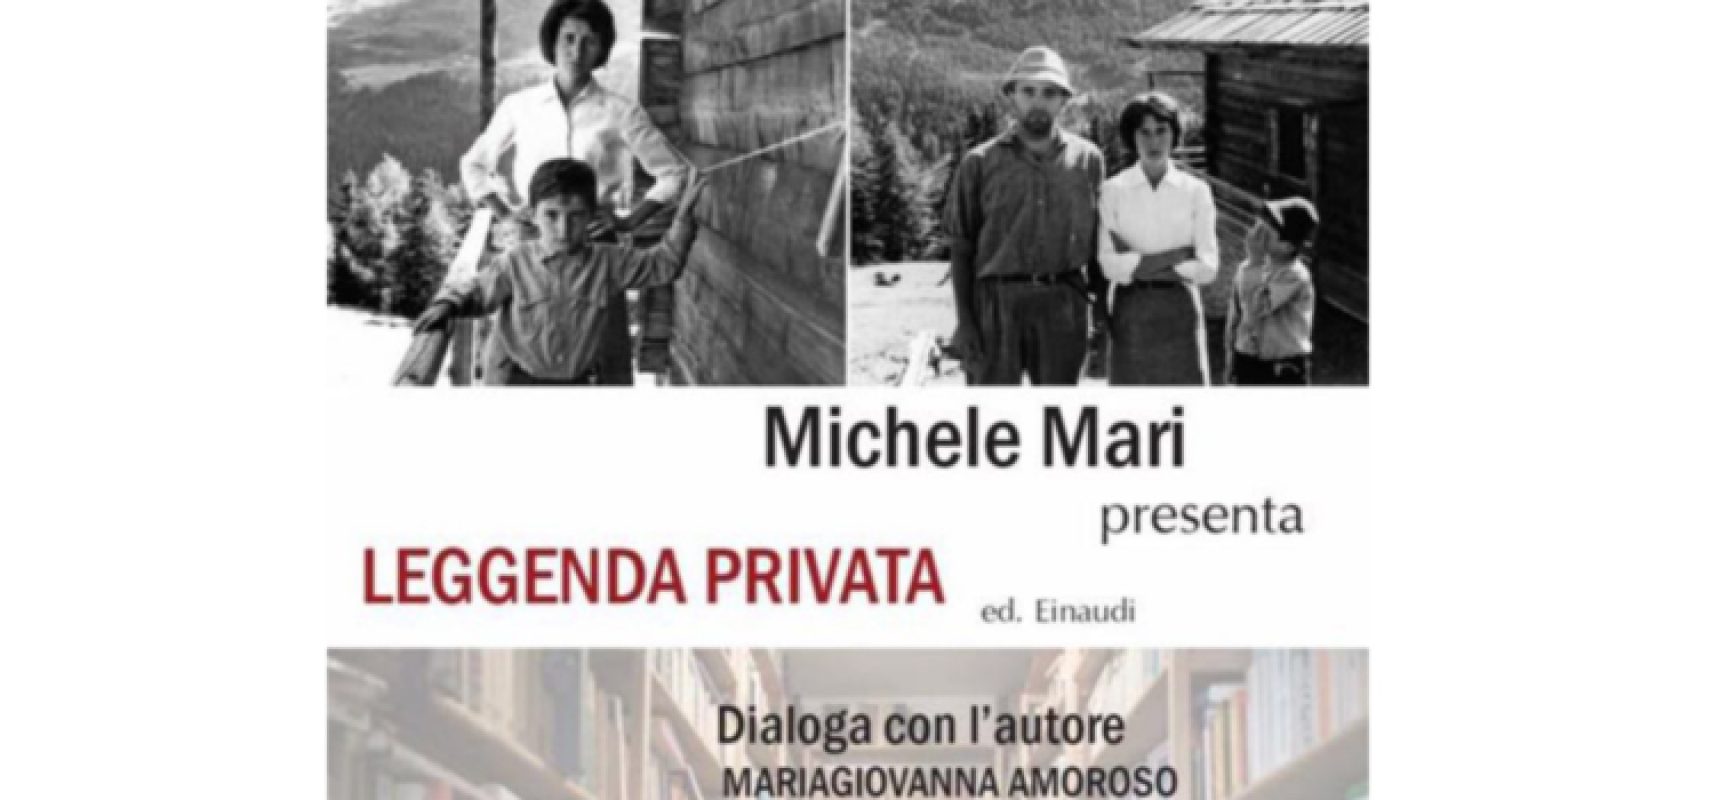 Stasera Michele Mari presenta il suo “Leggenda privata” alle Vecchie Segherie Mastrototaro